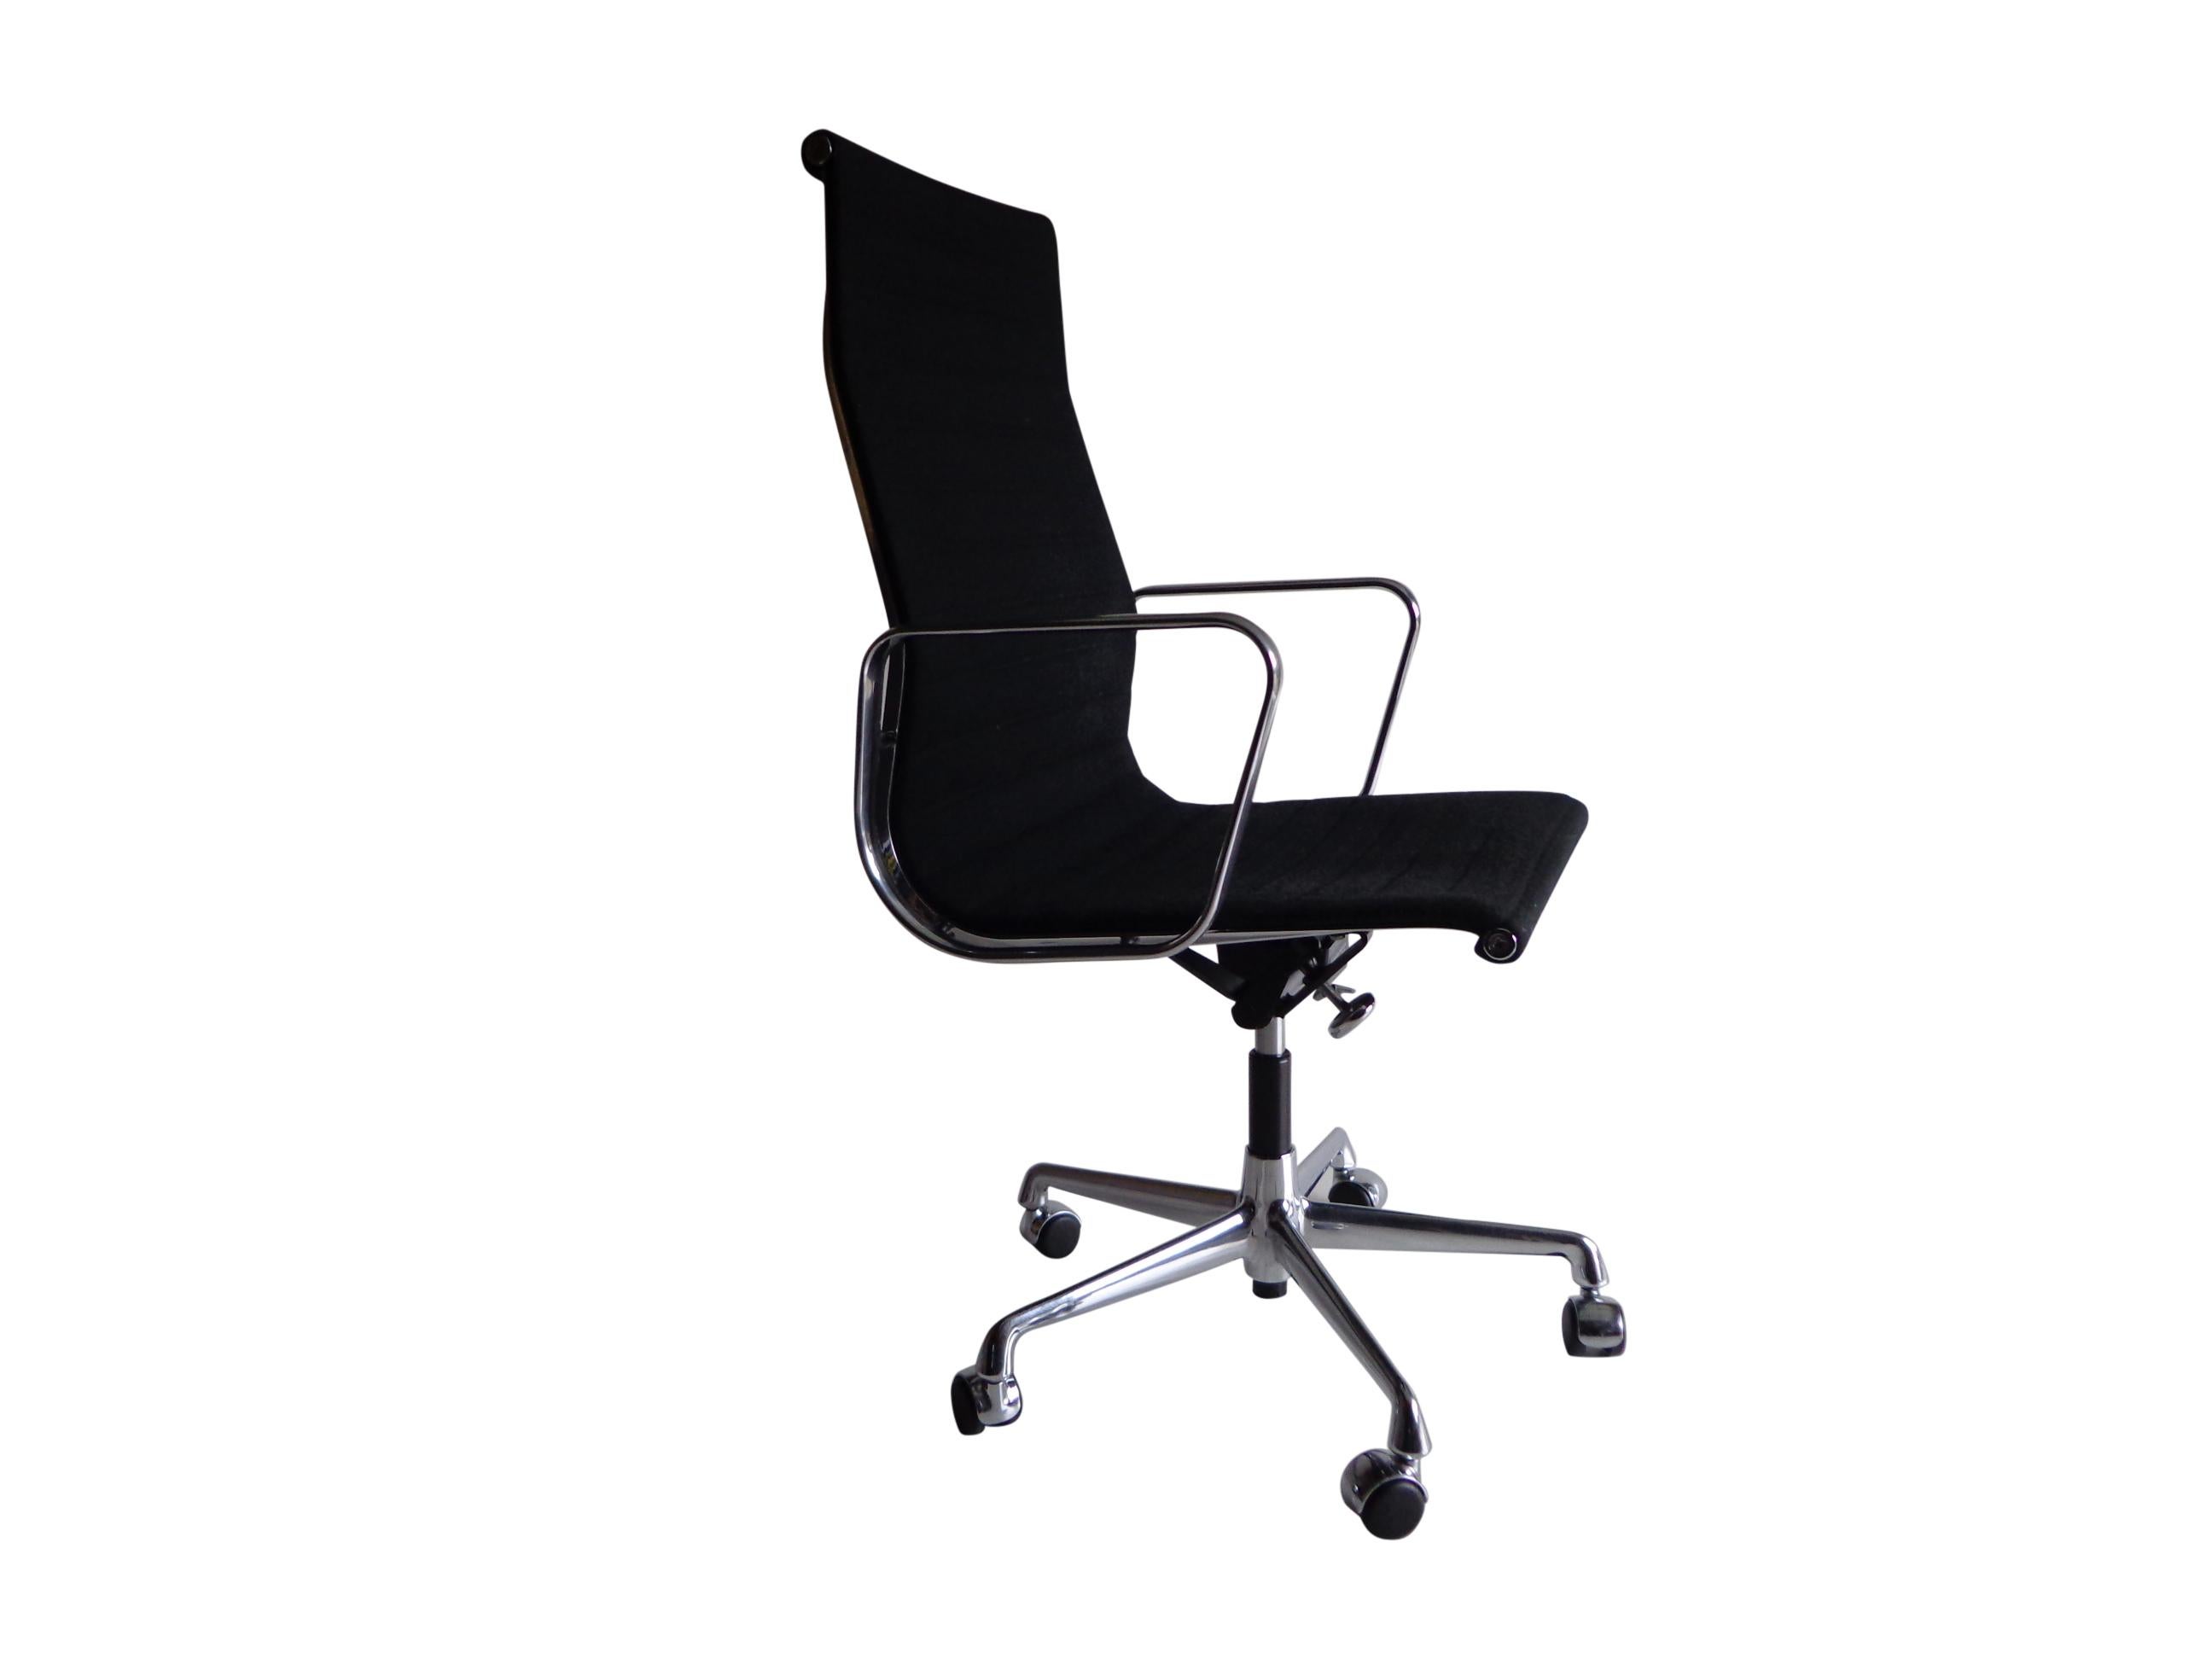 Ce qui n'était au départ qu'une idée de meuble de loisir solide est devenu l'un des meubles de bureau les plus populaires depuis sa conception en 1958. La chaise EA 119 fait partie du célèbre groupe des chaises en aluminium. Conçue par le couple